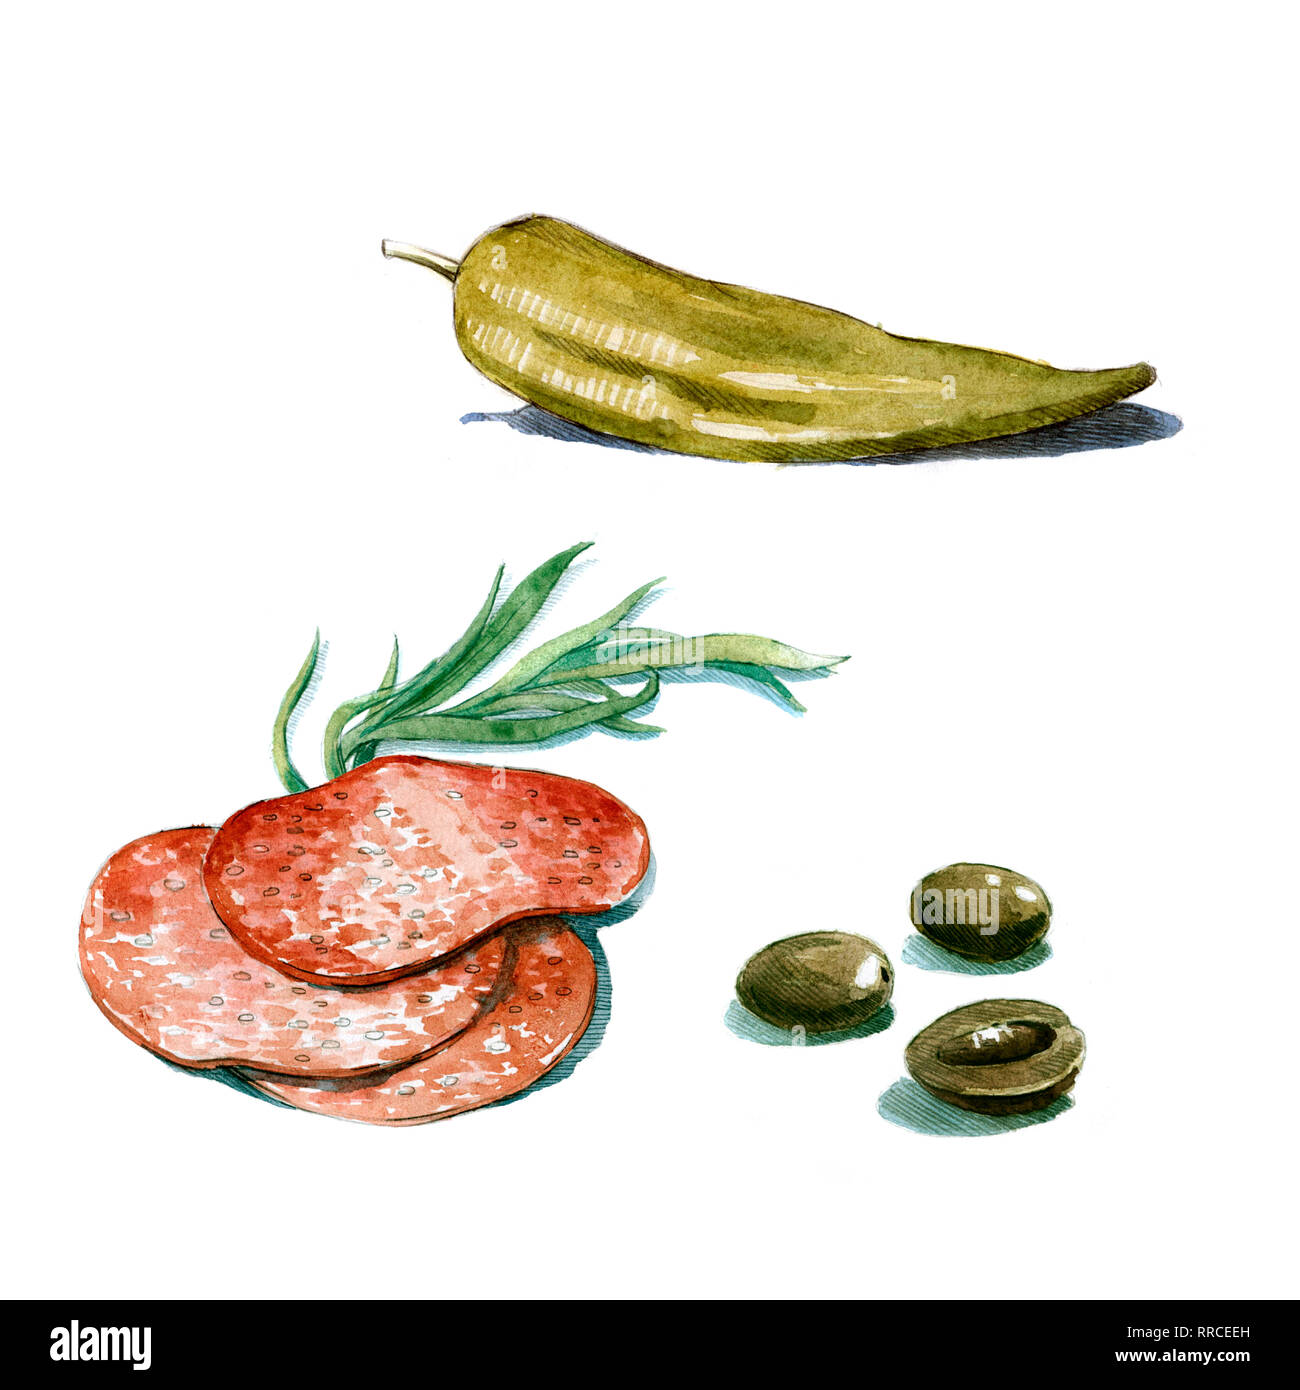 Tranches de salami olives à l'estragon et le poivre illustration aquarelle sur fond blanc Banque D'Images